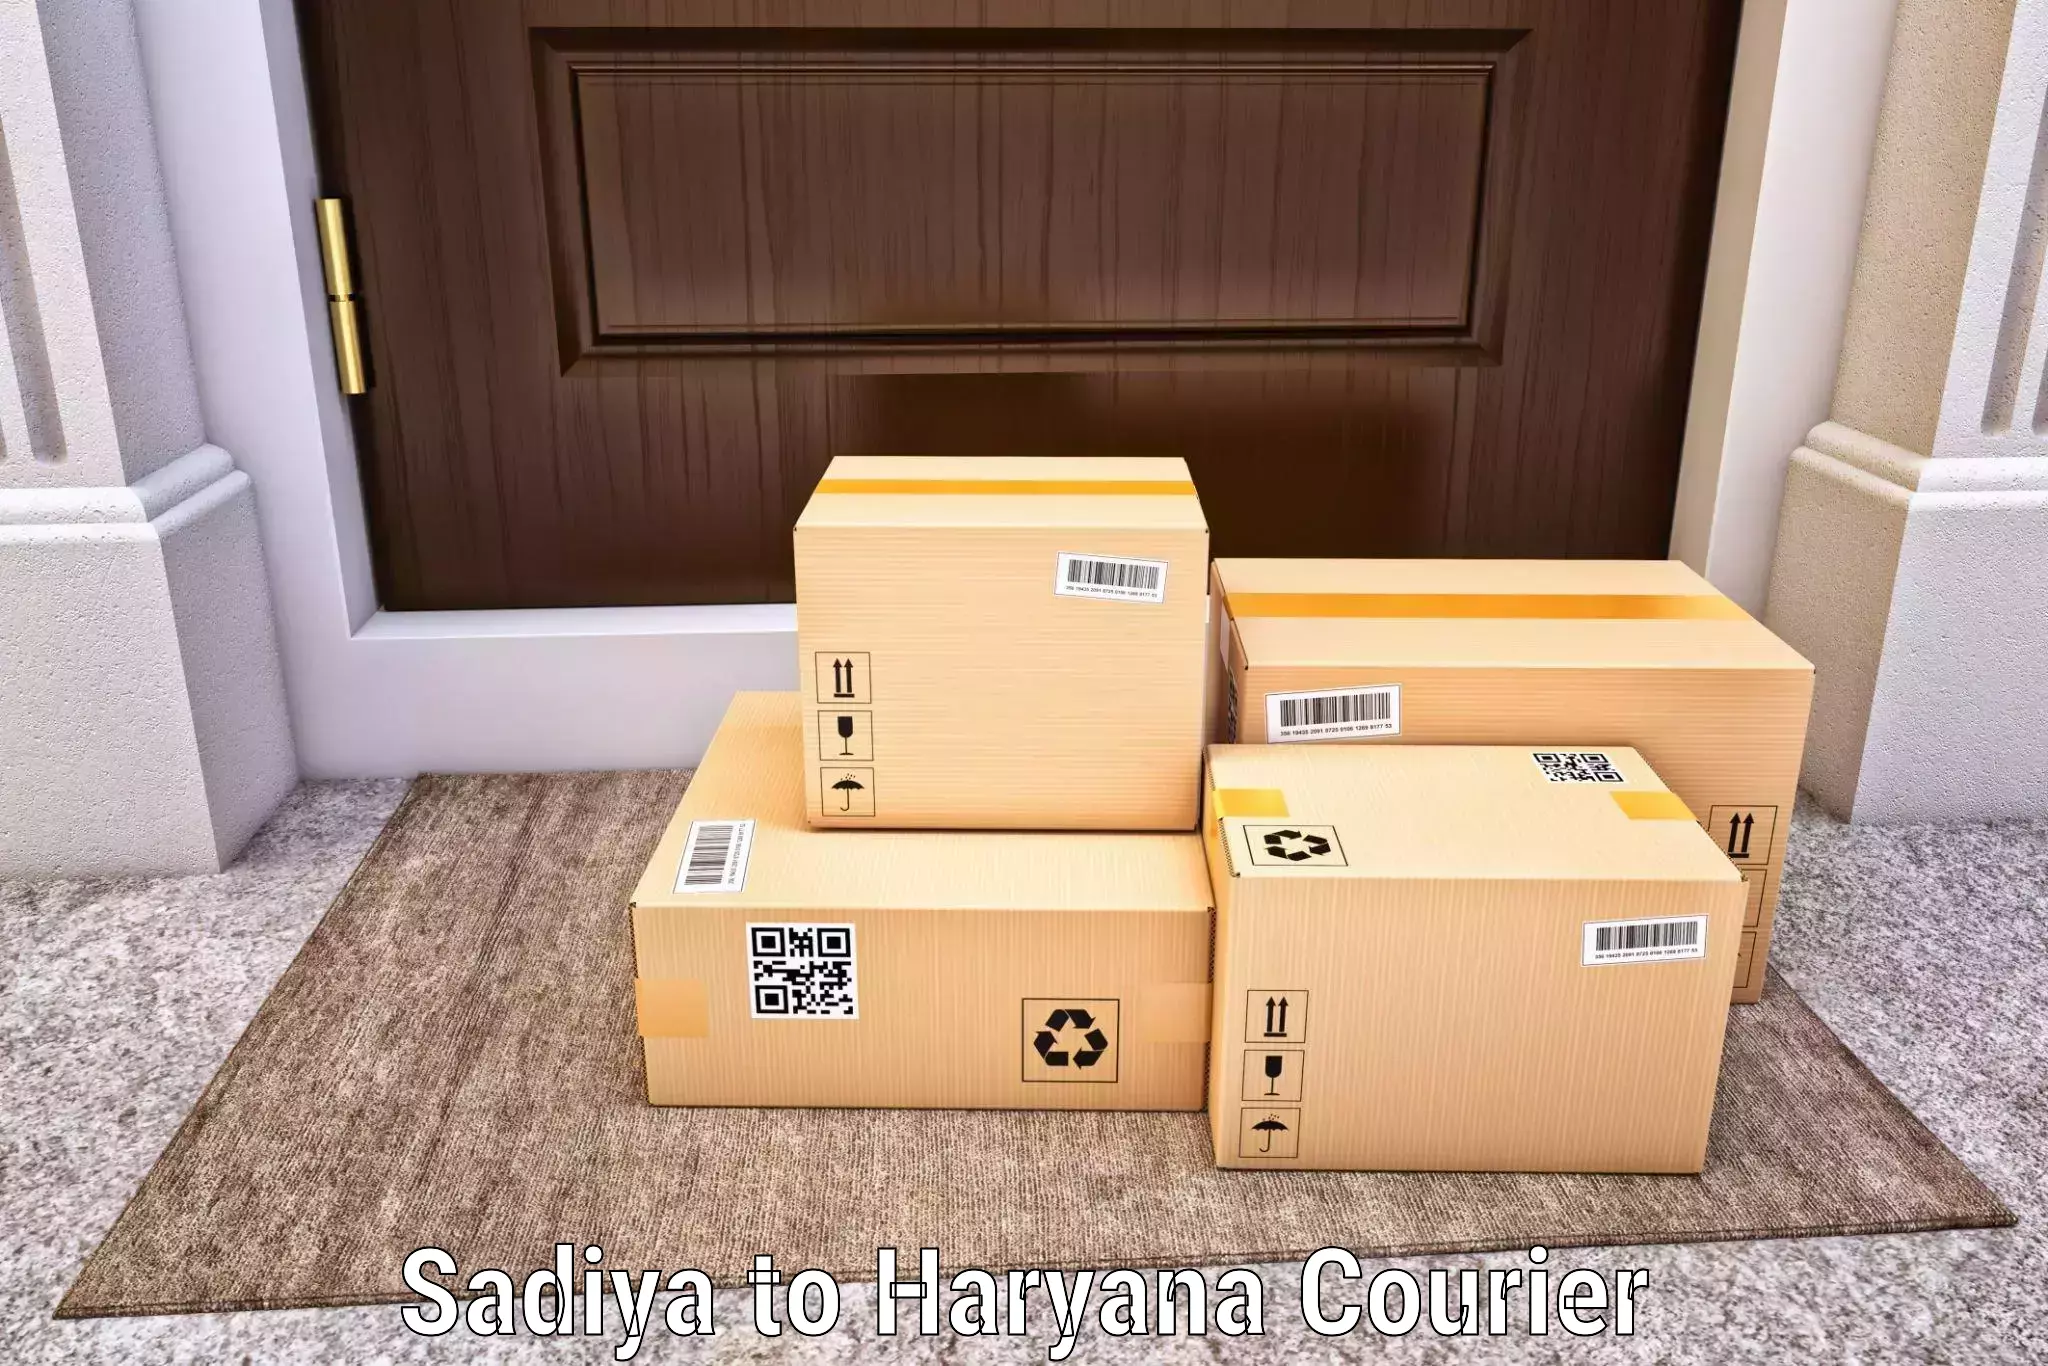 Door-to-door freight service Sadiya to NCR Haryana